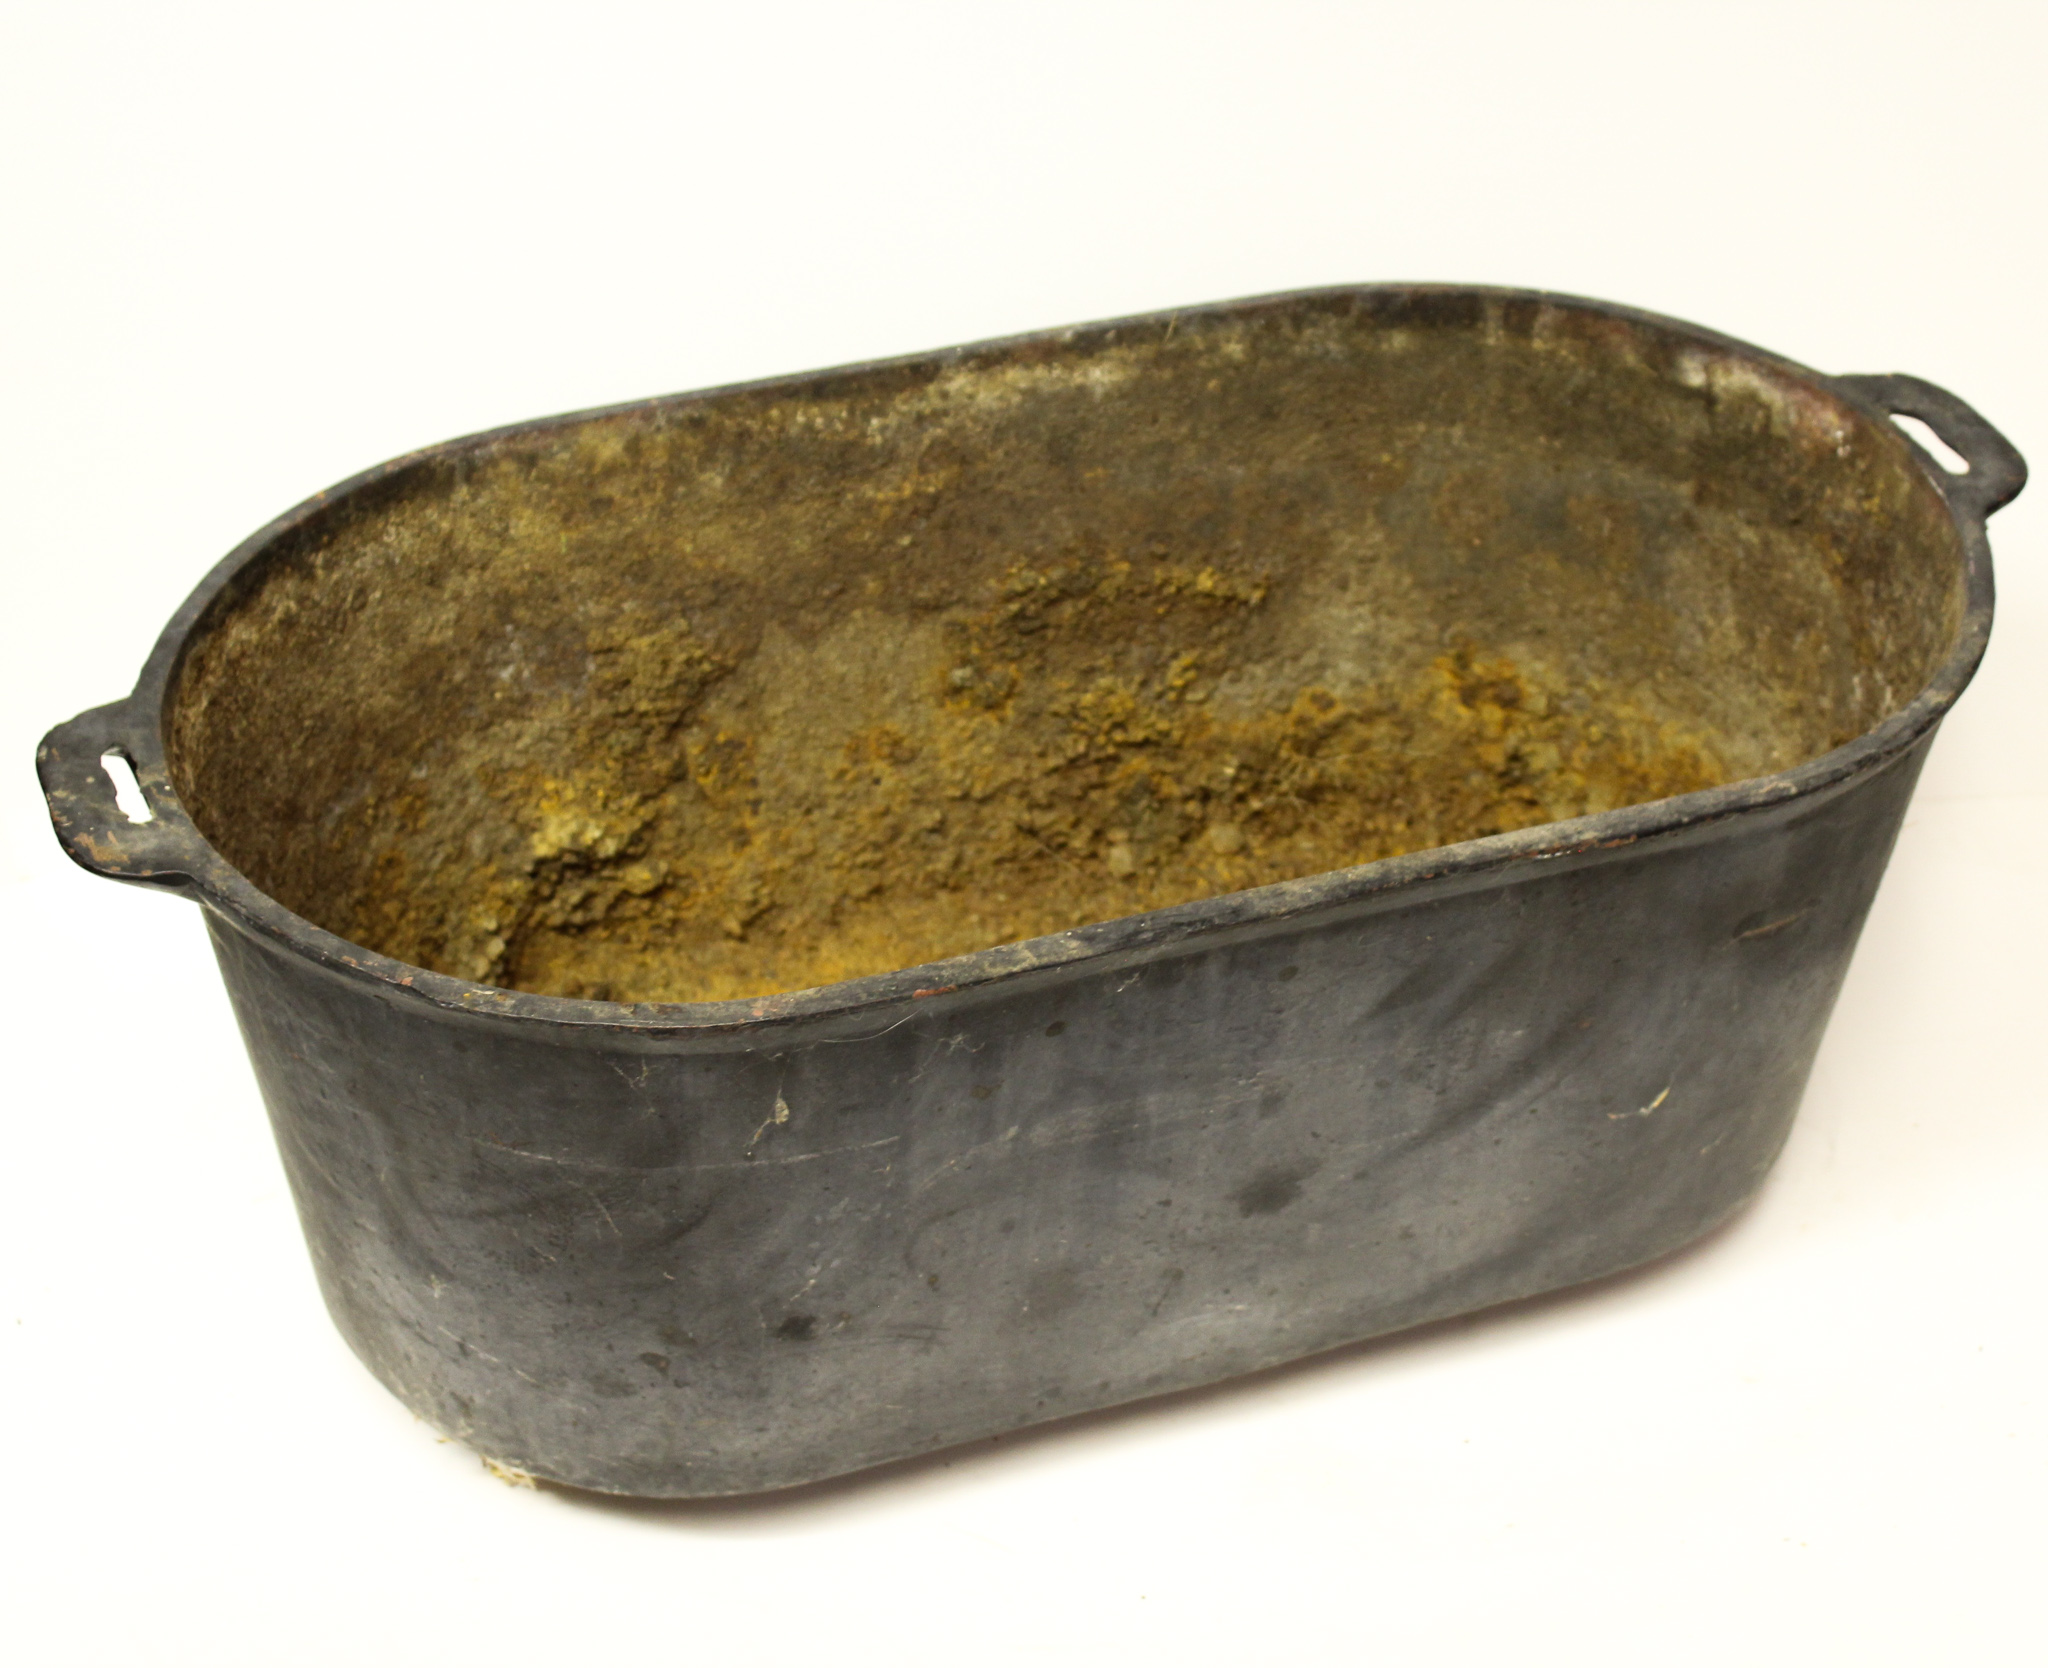 Bargain John's Antiques  Antique Cast Iron Oblong Oval Cooking Pot Boiler  - double handles - Bargain John's Antiques